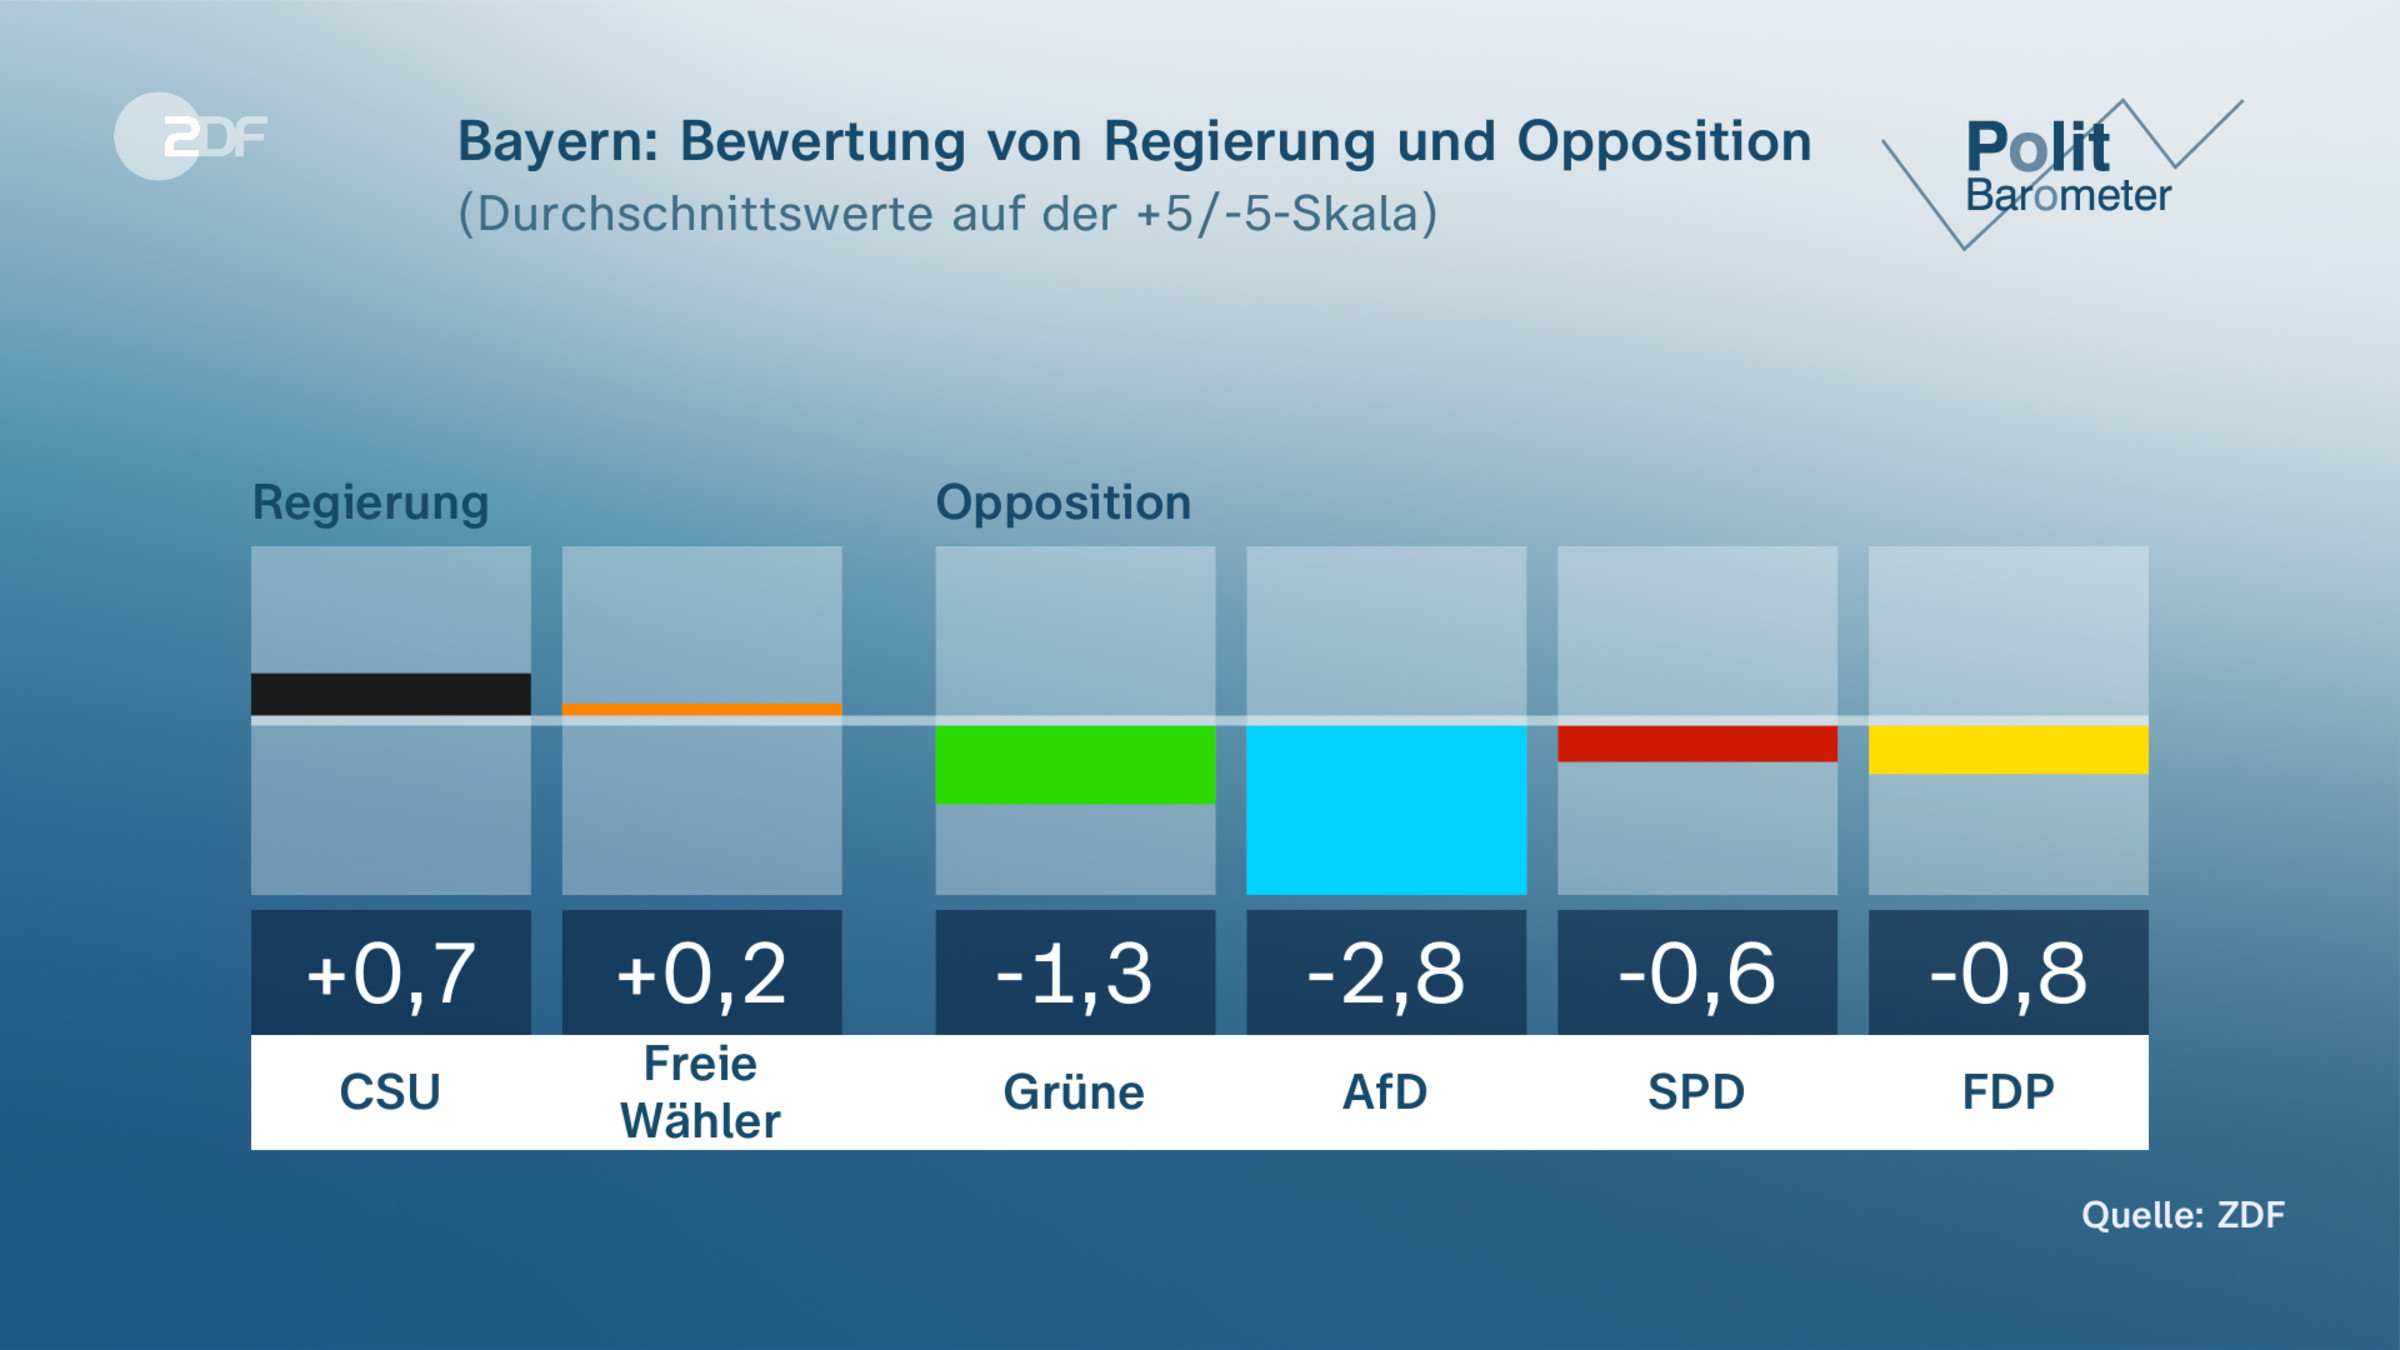  Bayern: Bewertung von Regierung und Opposition 